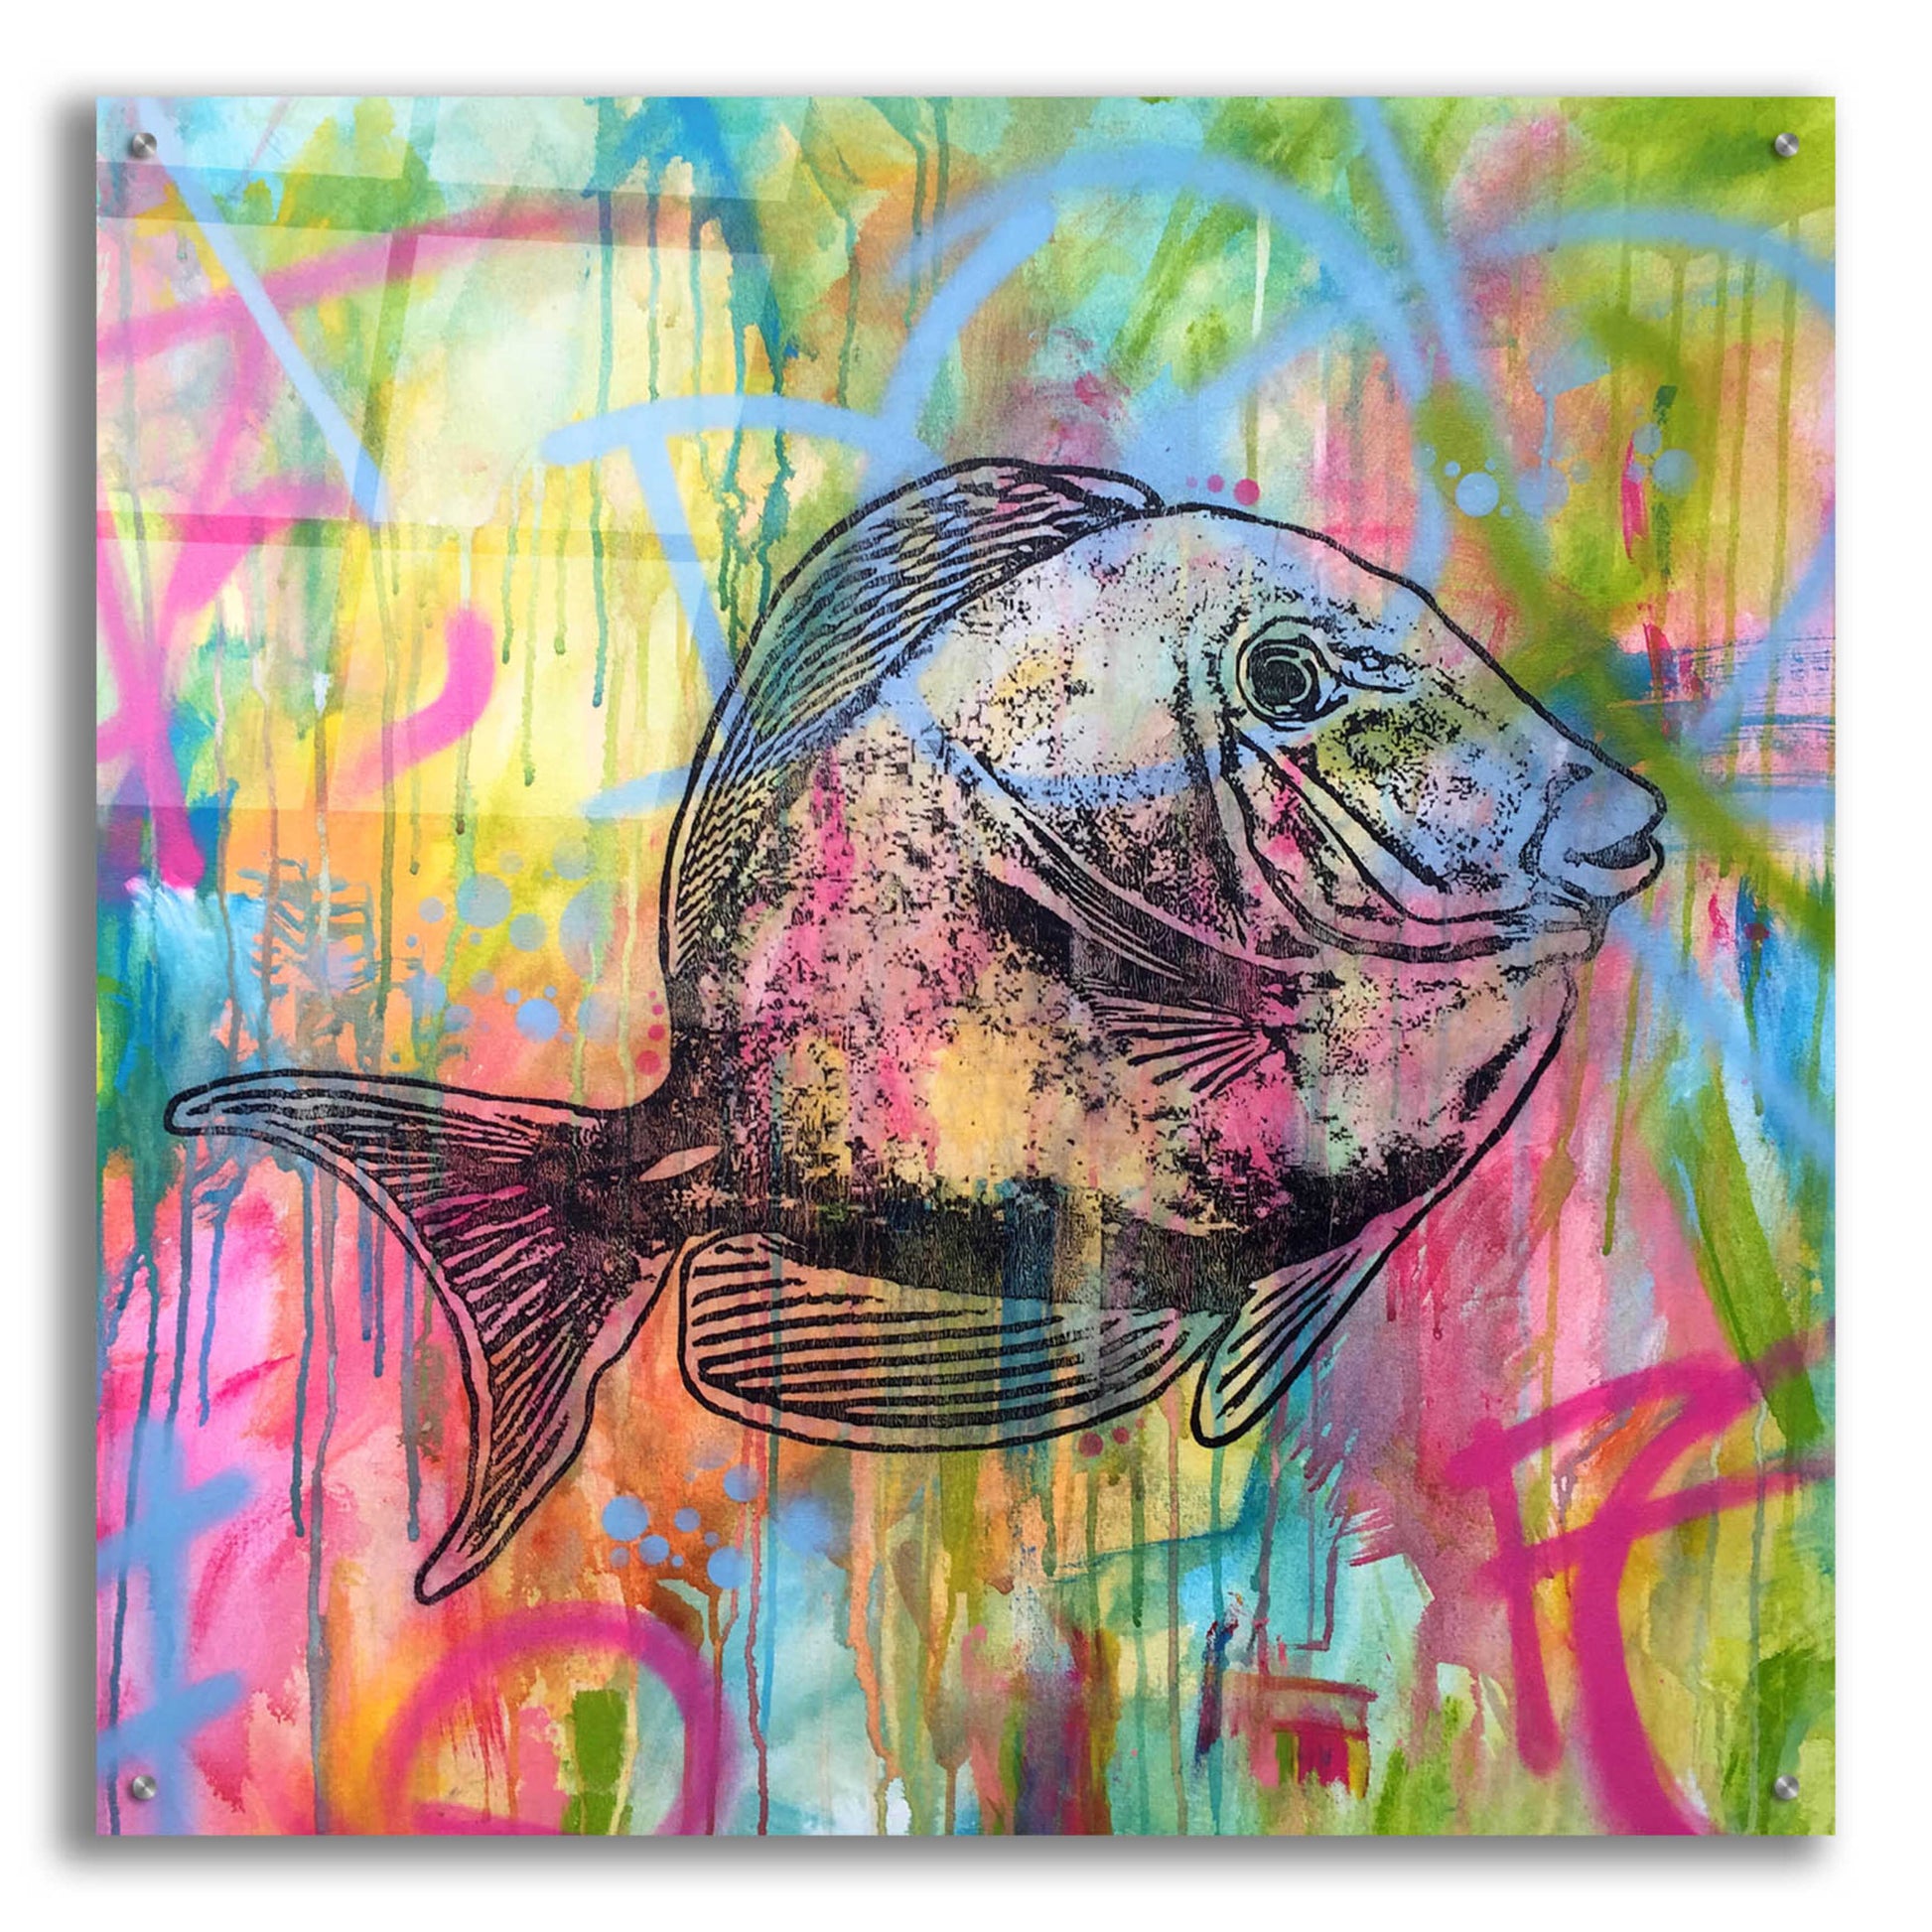 Epic Art 'Fishy Spray' by Dean Russo, Acrylic Glass Wall Art,36x36